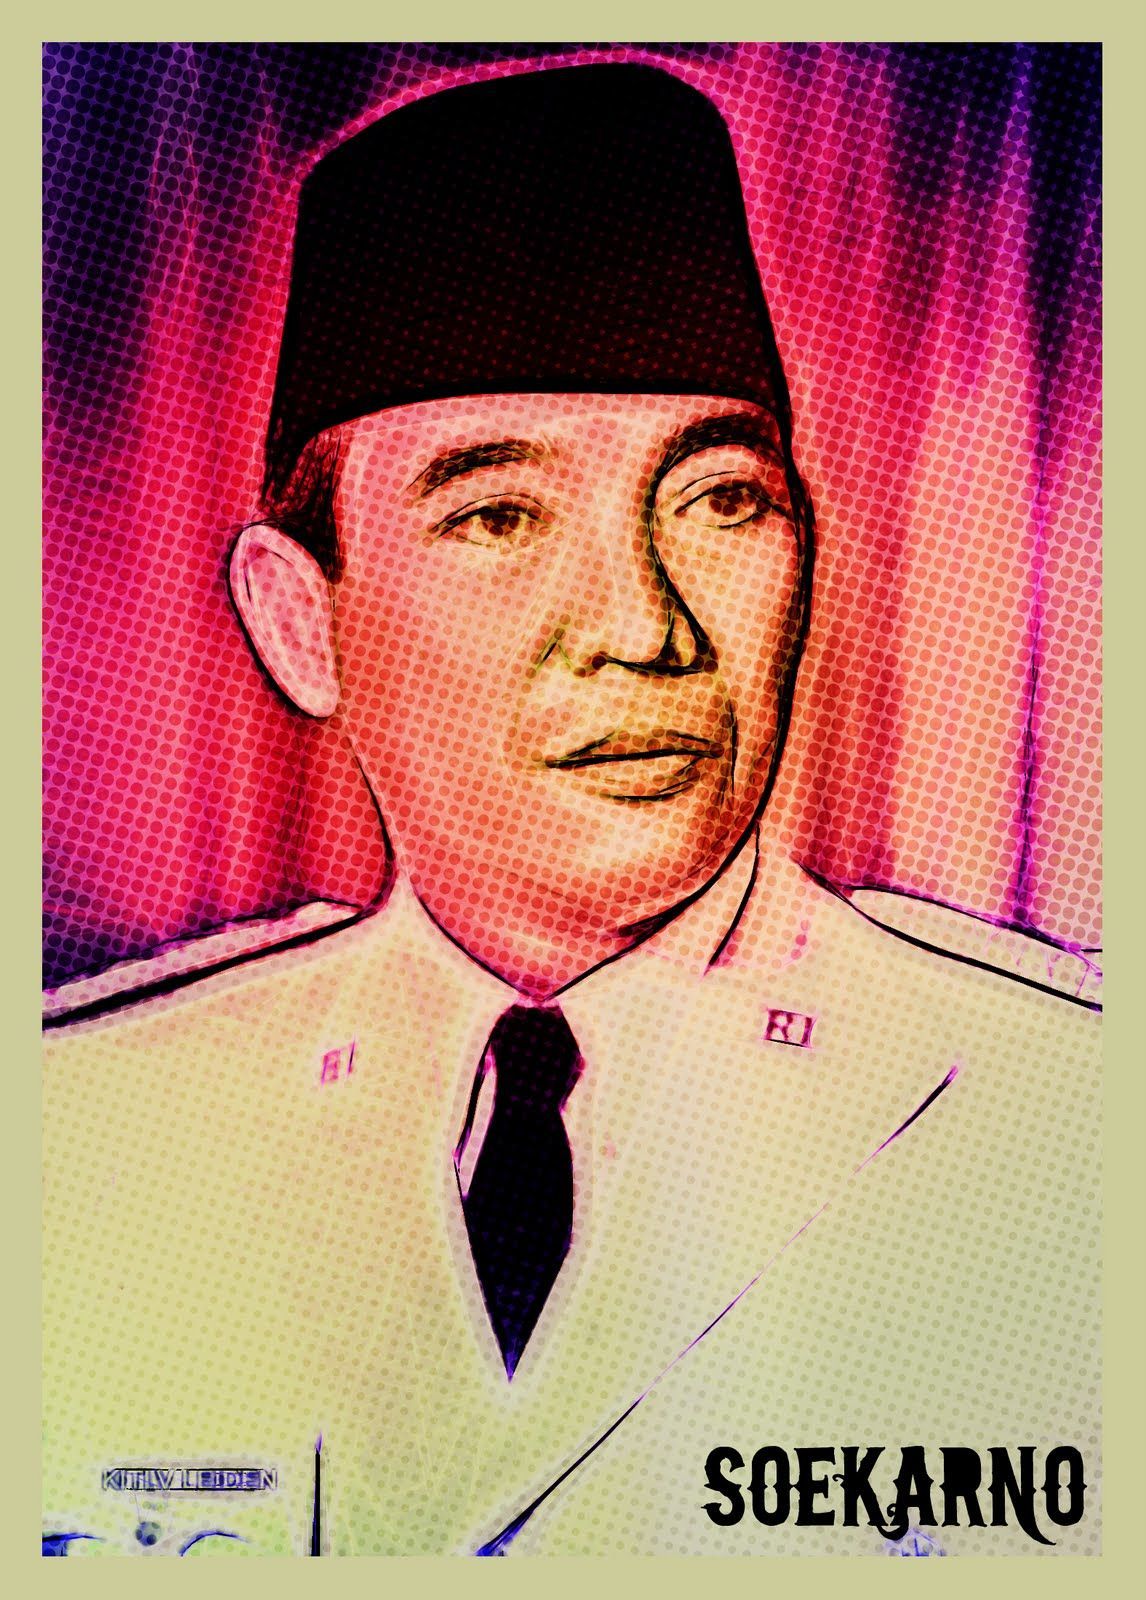 Wallpaper Soekarno HD. 1594x1206 #soekarno. Wallpaper